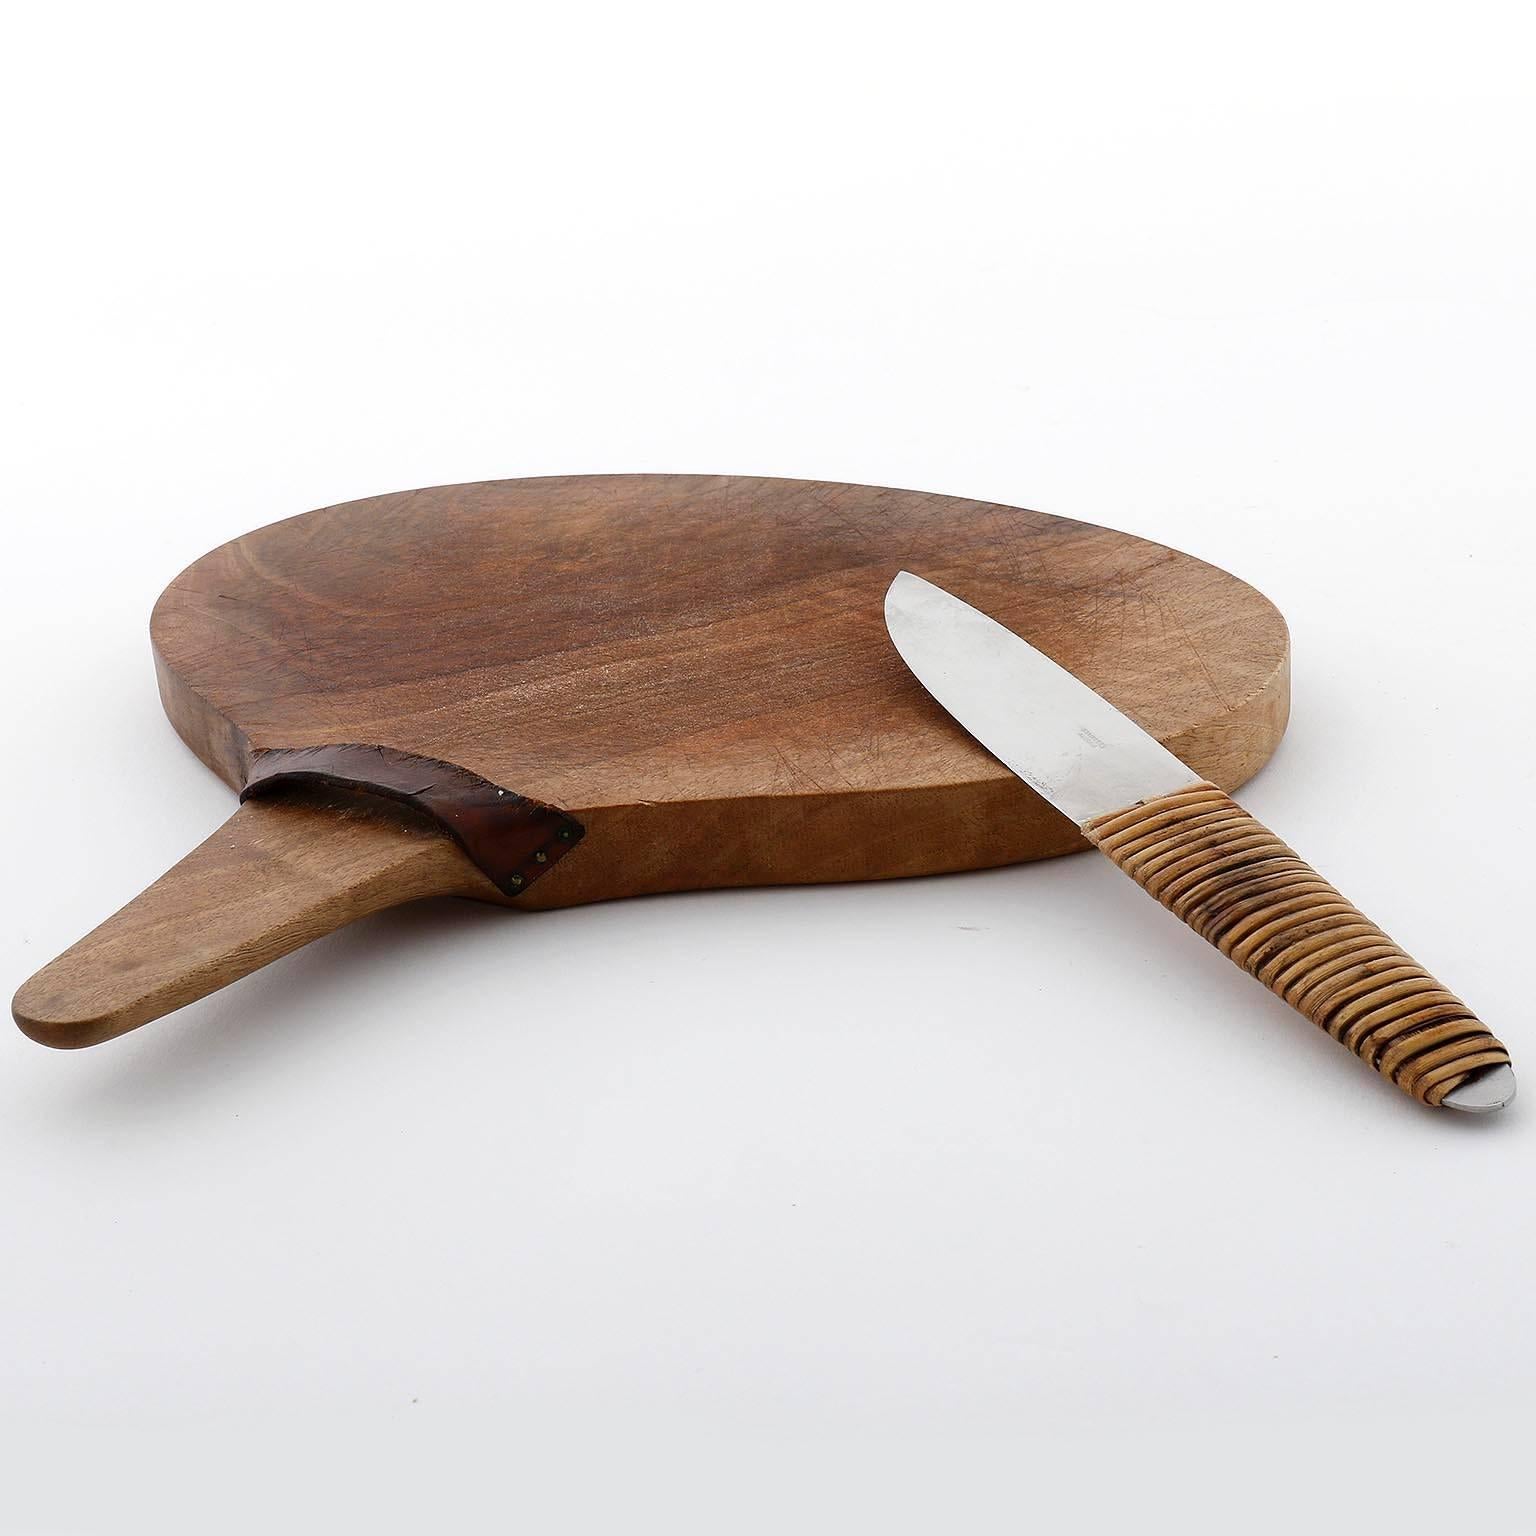 Austrian Carl Auböck, Chopping Board Knife, Wood Wicker Stainless Steel, Austria, 1950s